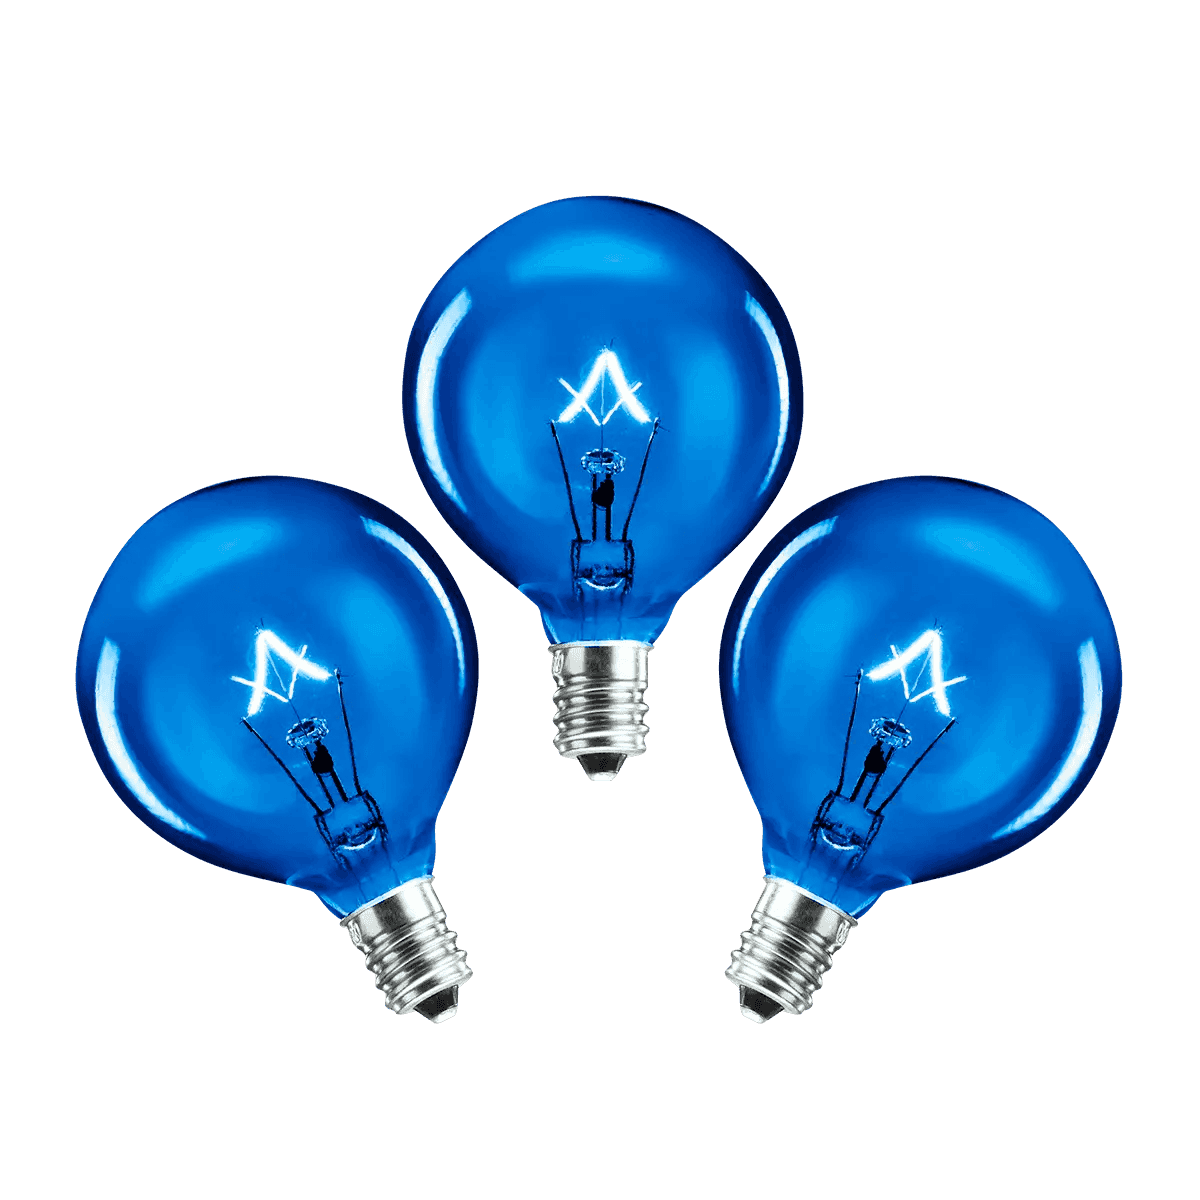 25 Watt Light Bulbs - 3 Pack – Blue